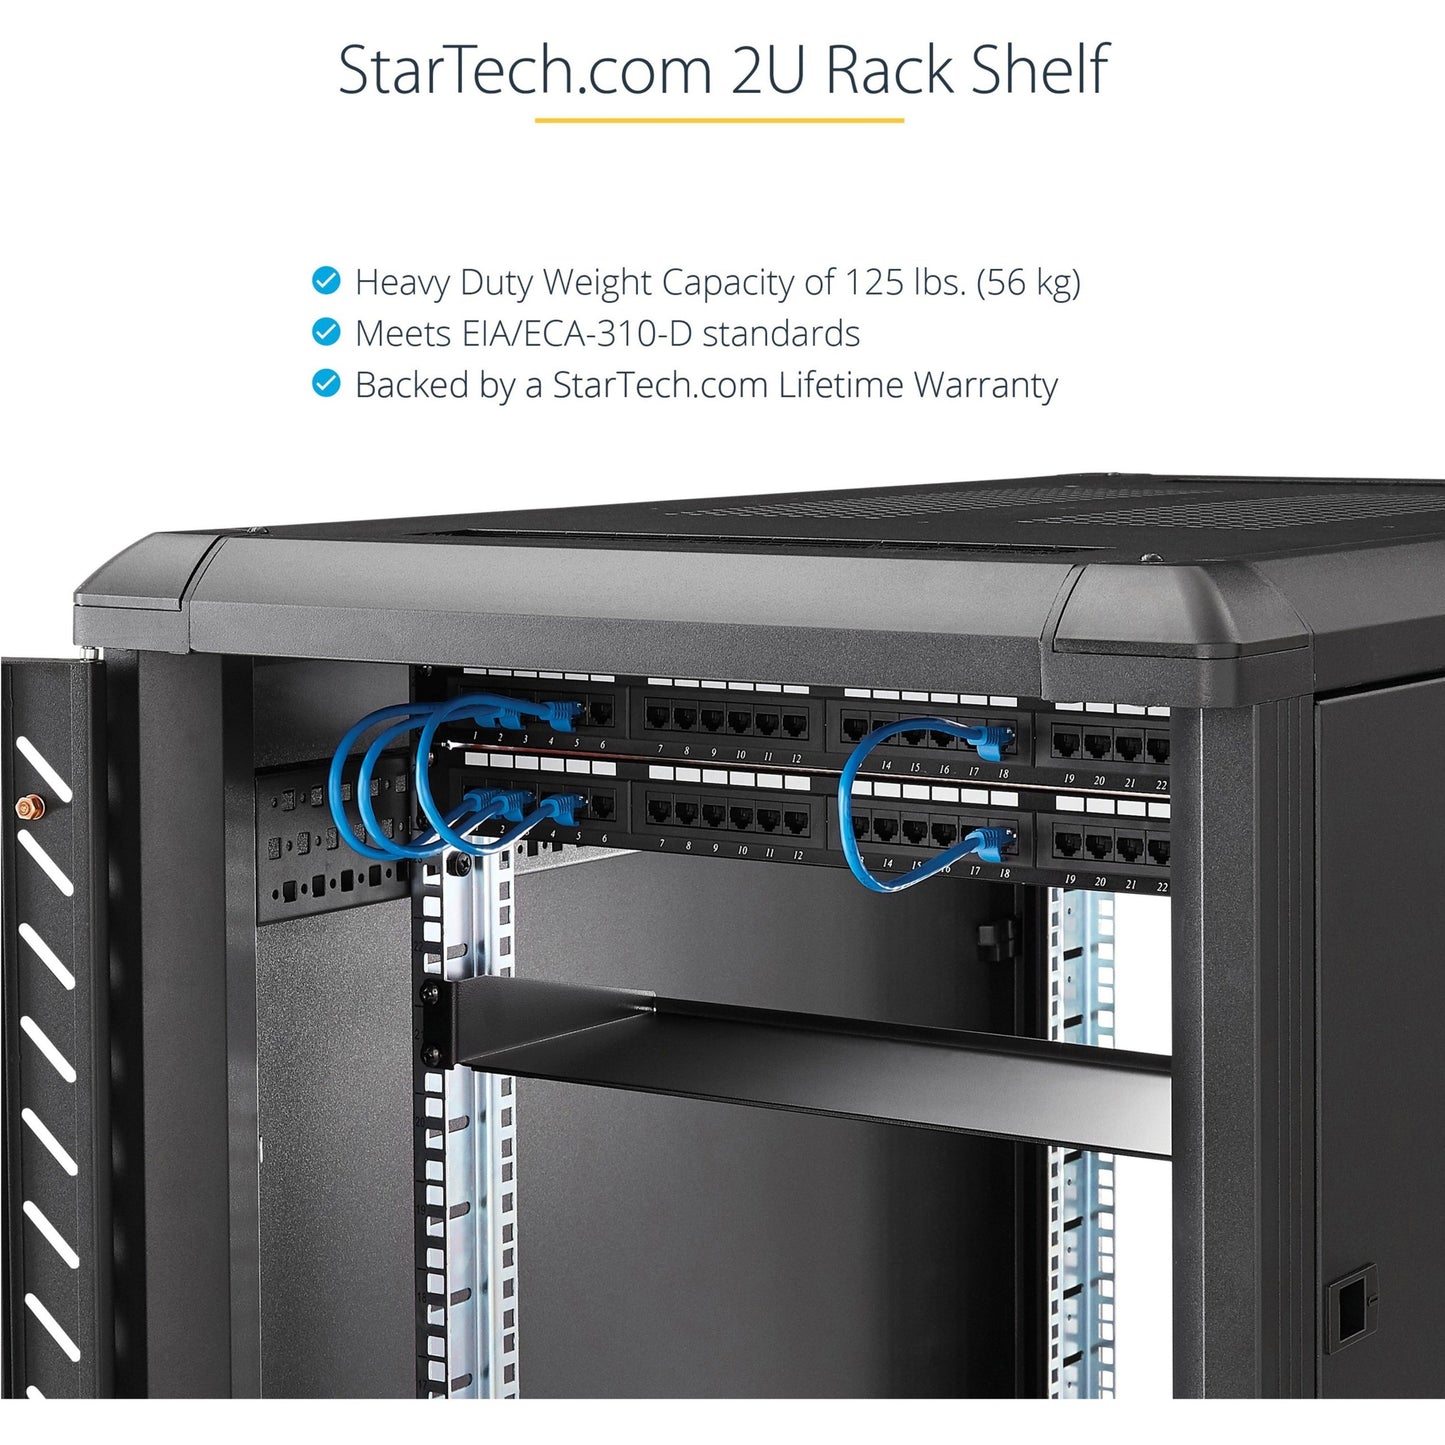 StarTech.com 2U Server Rack Cabinet Shelf - Fixed 18" Deep Cantilever Rackmount Tray for 19" Data/AV/Network Enclosure - Weight Cap. 125lbs/56kg